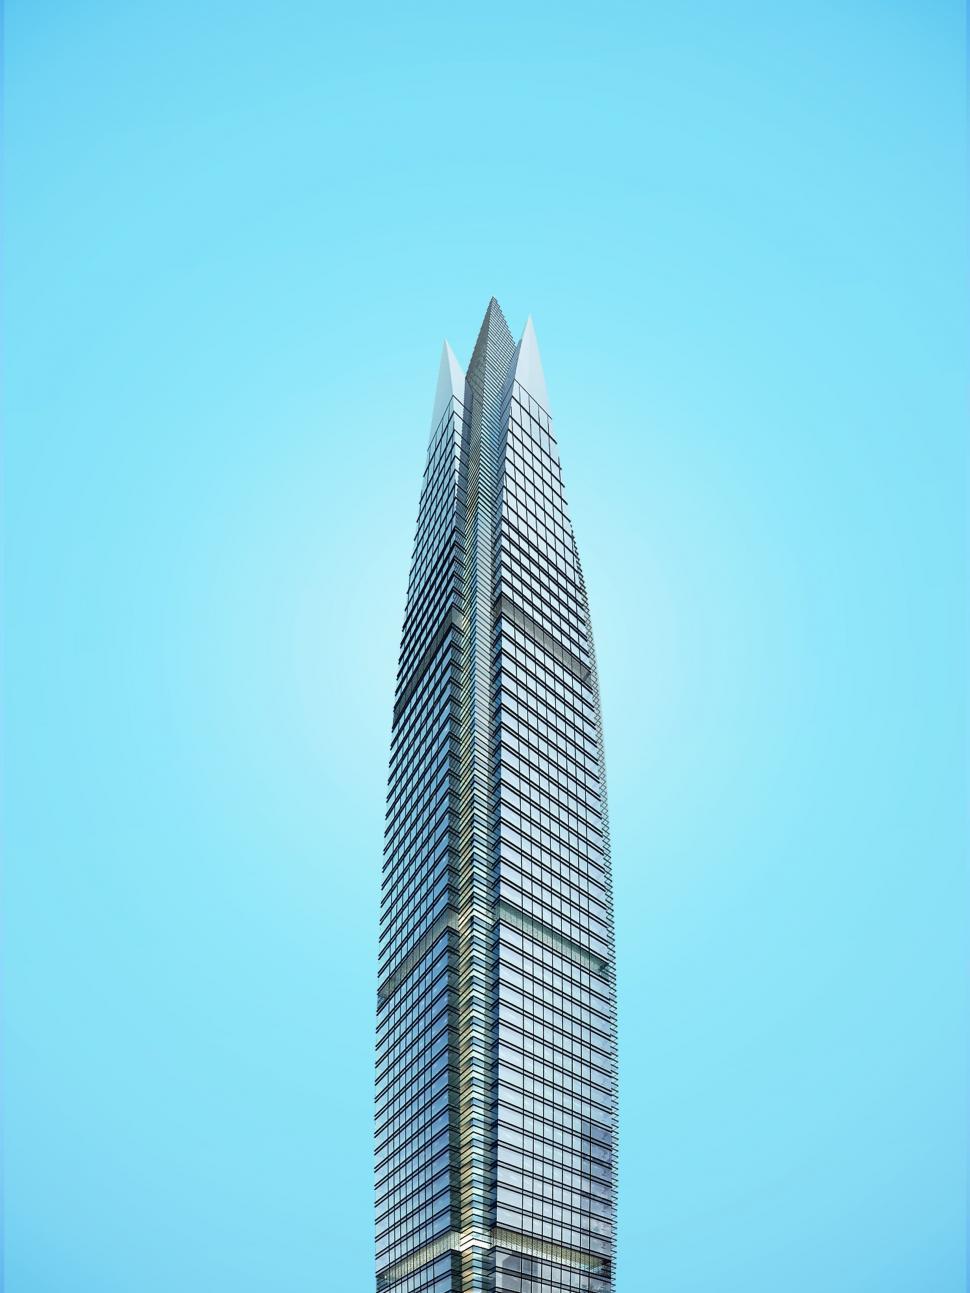 Free Image of Futuristic Skyscraper 